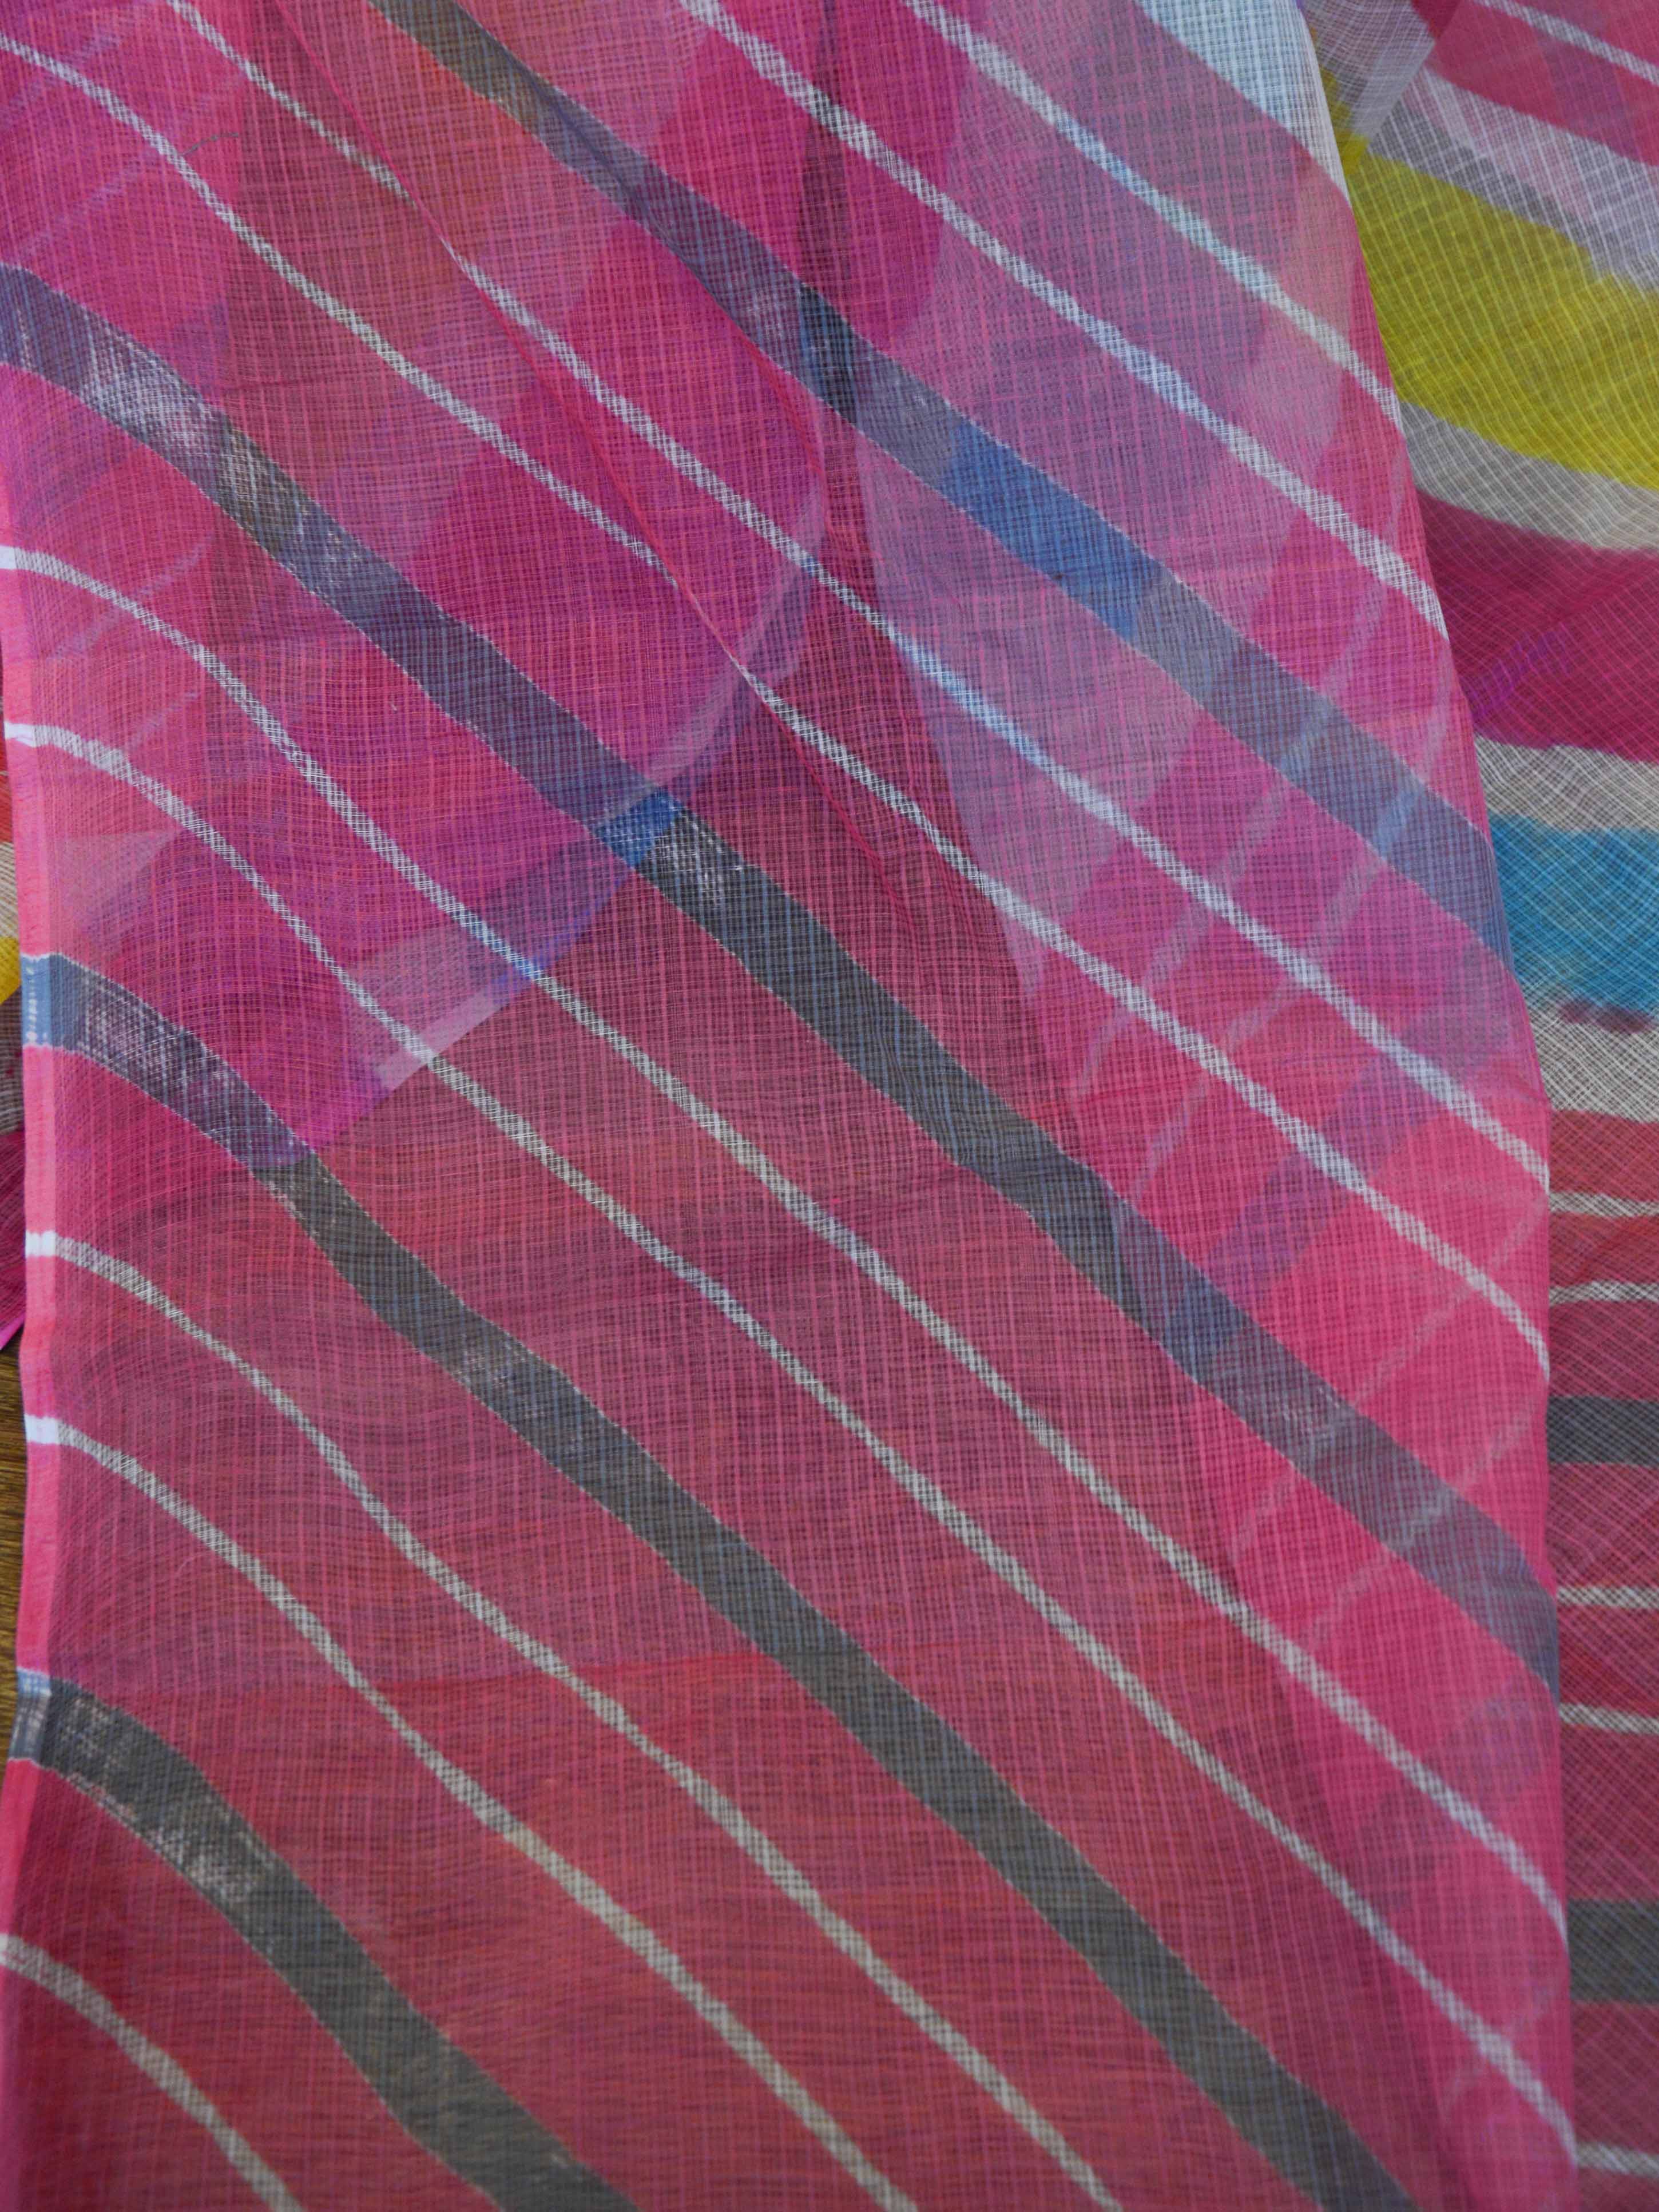 Pure Cotton Kota Doria Saree With Hand-Dyed Leheriya Design-Pink